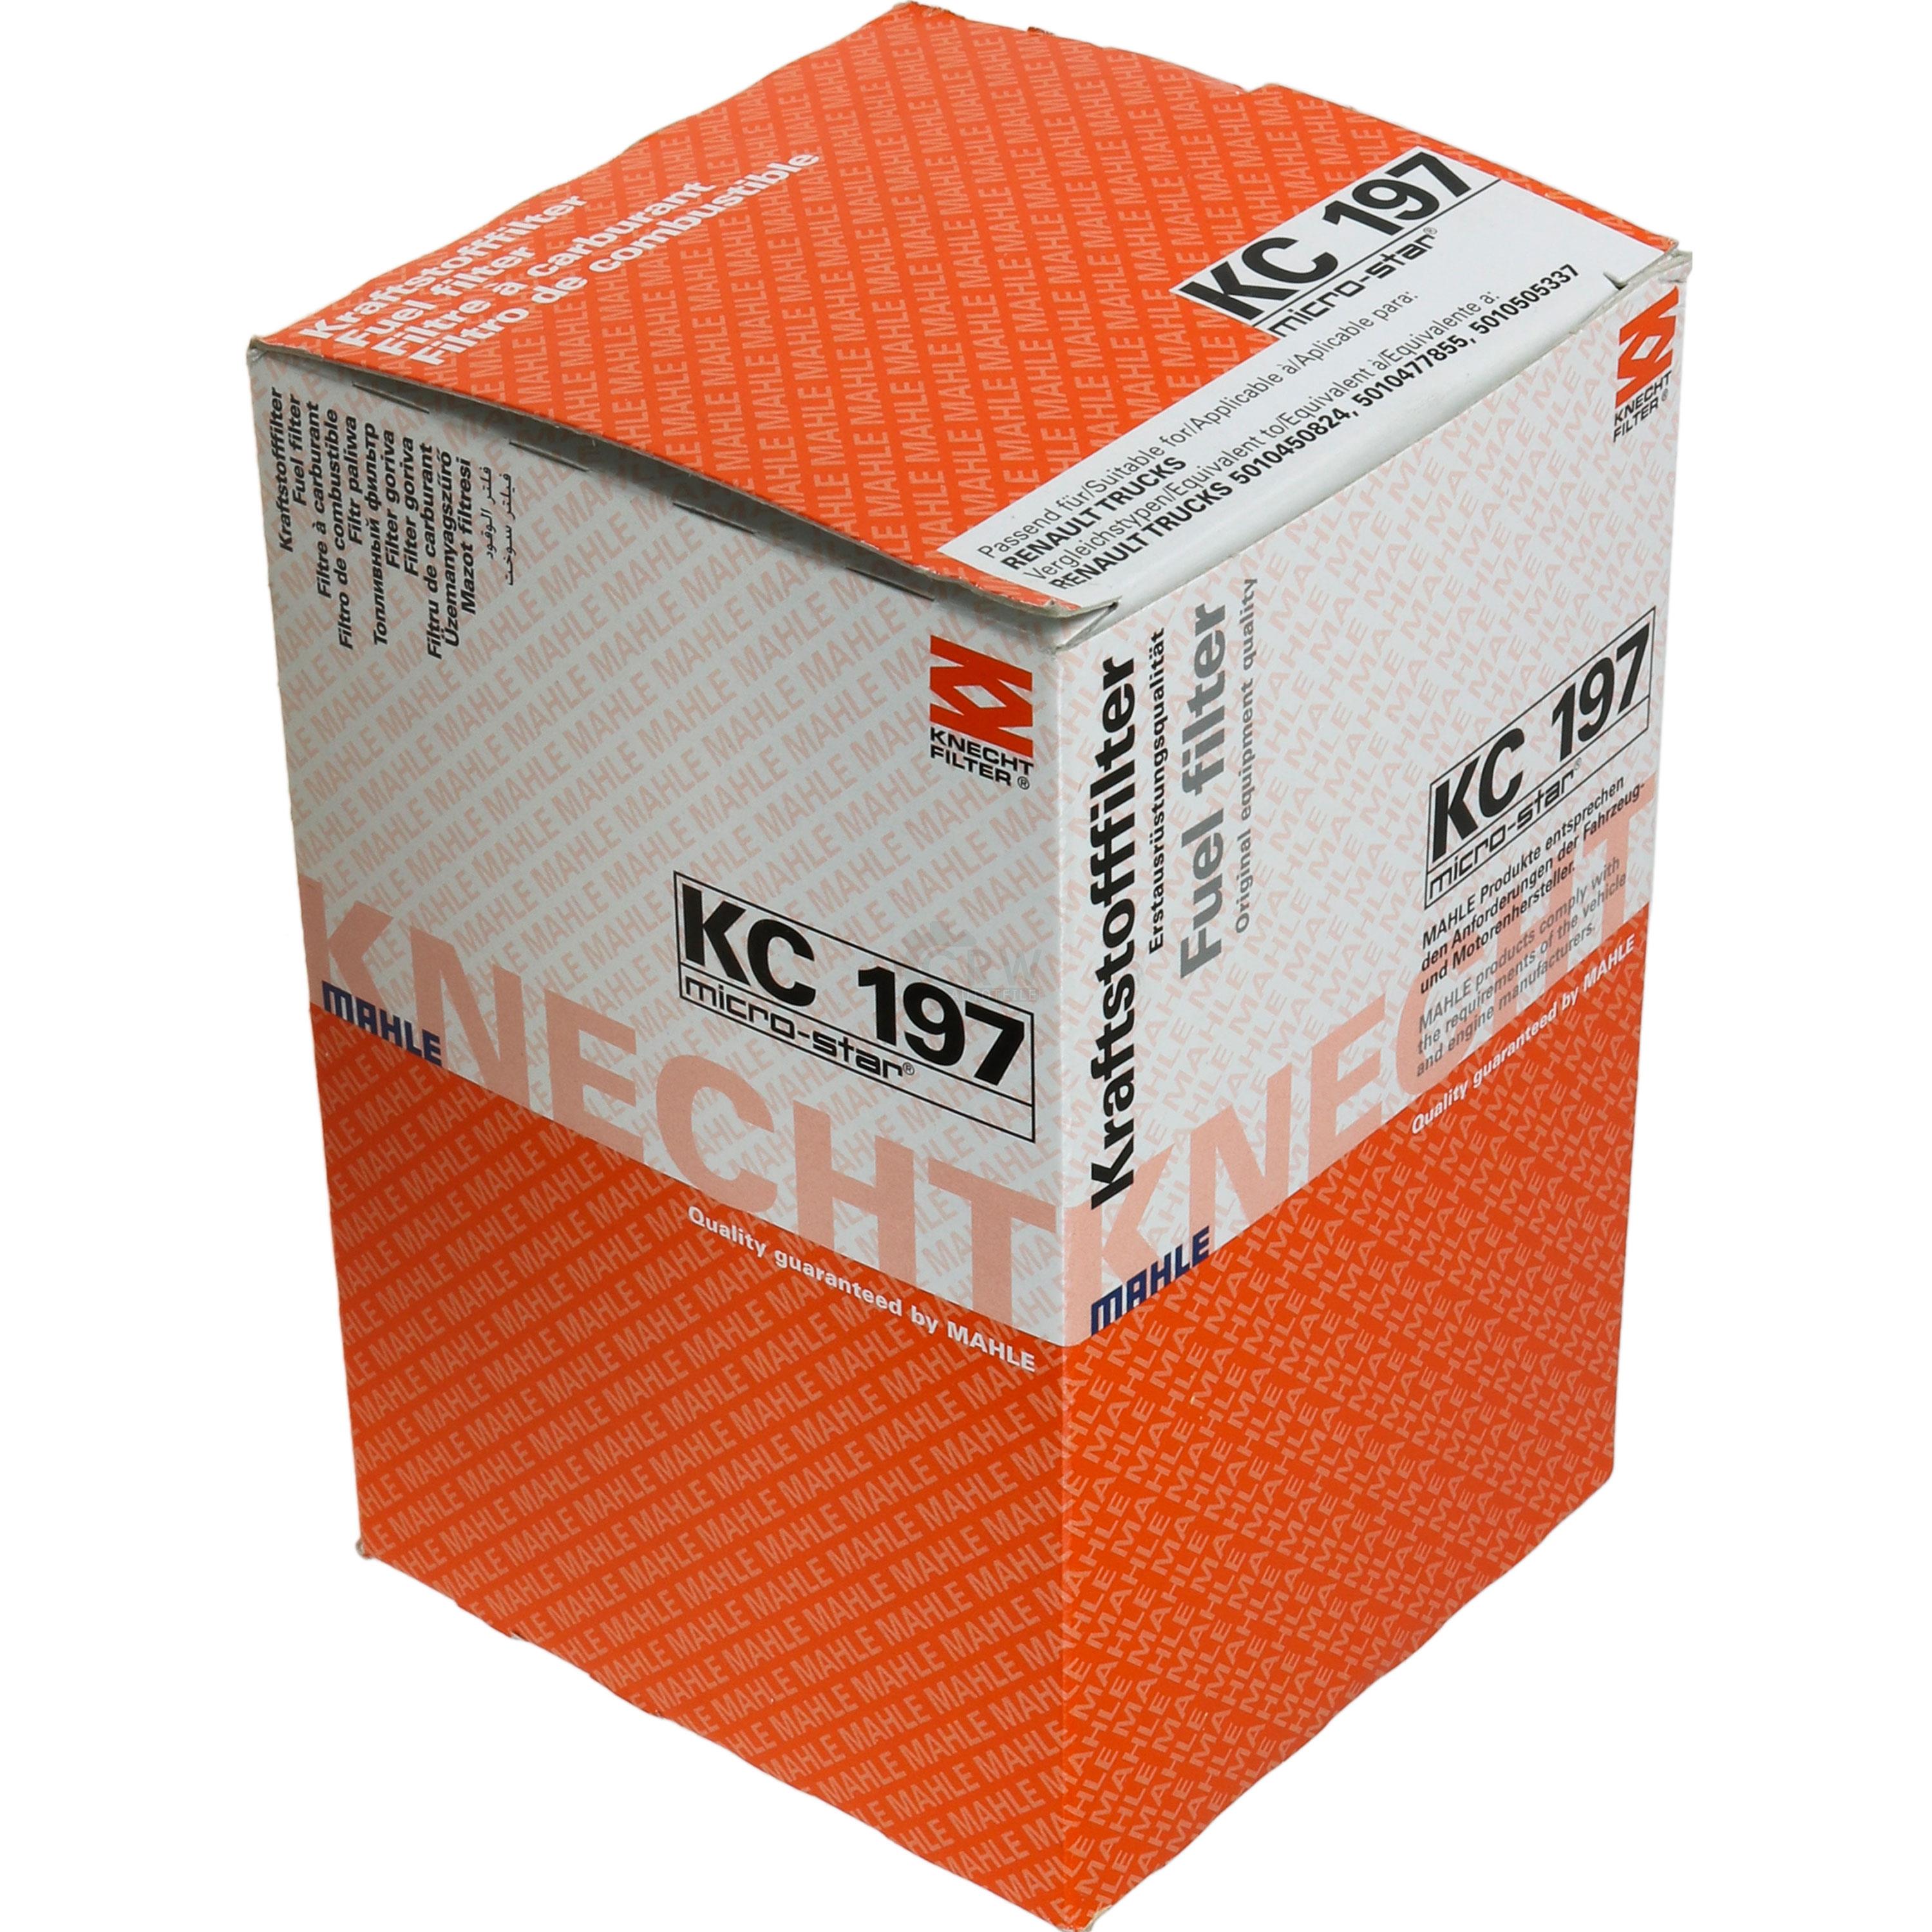 MAHLE / KNECHT KC 197 Kraftstofffilter Filter Fuel